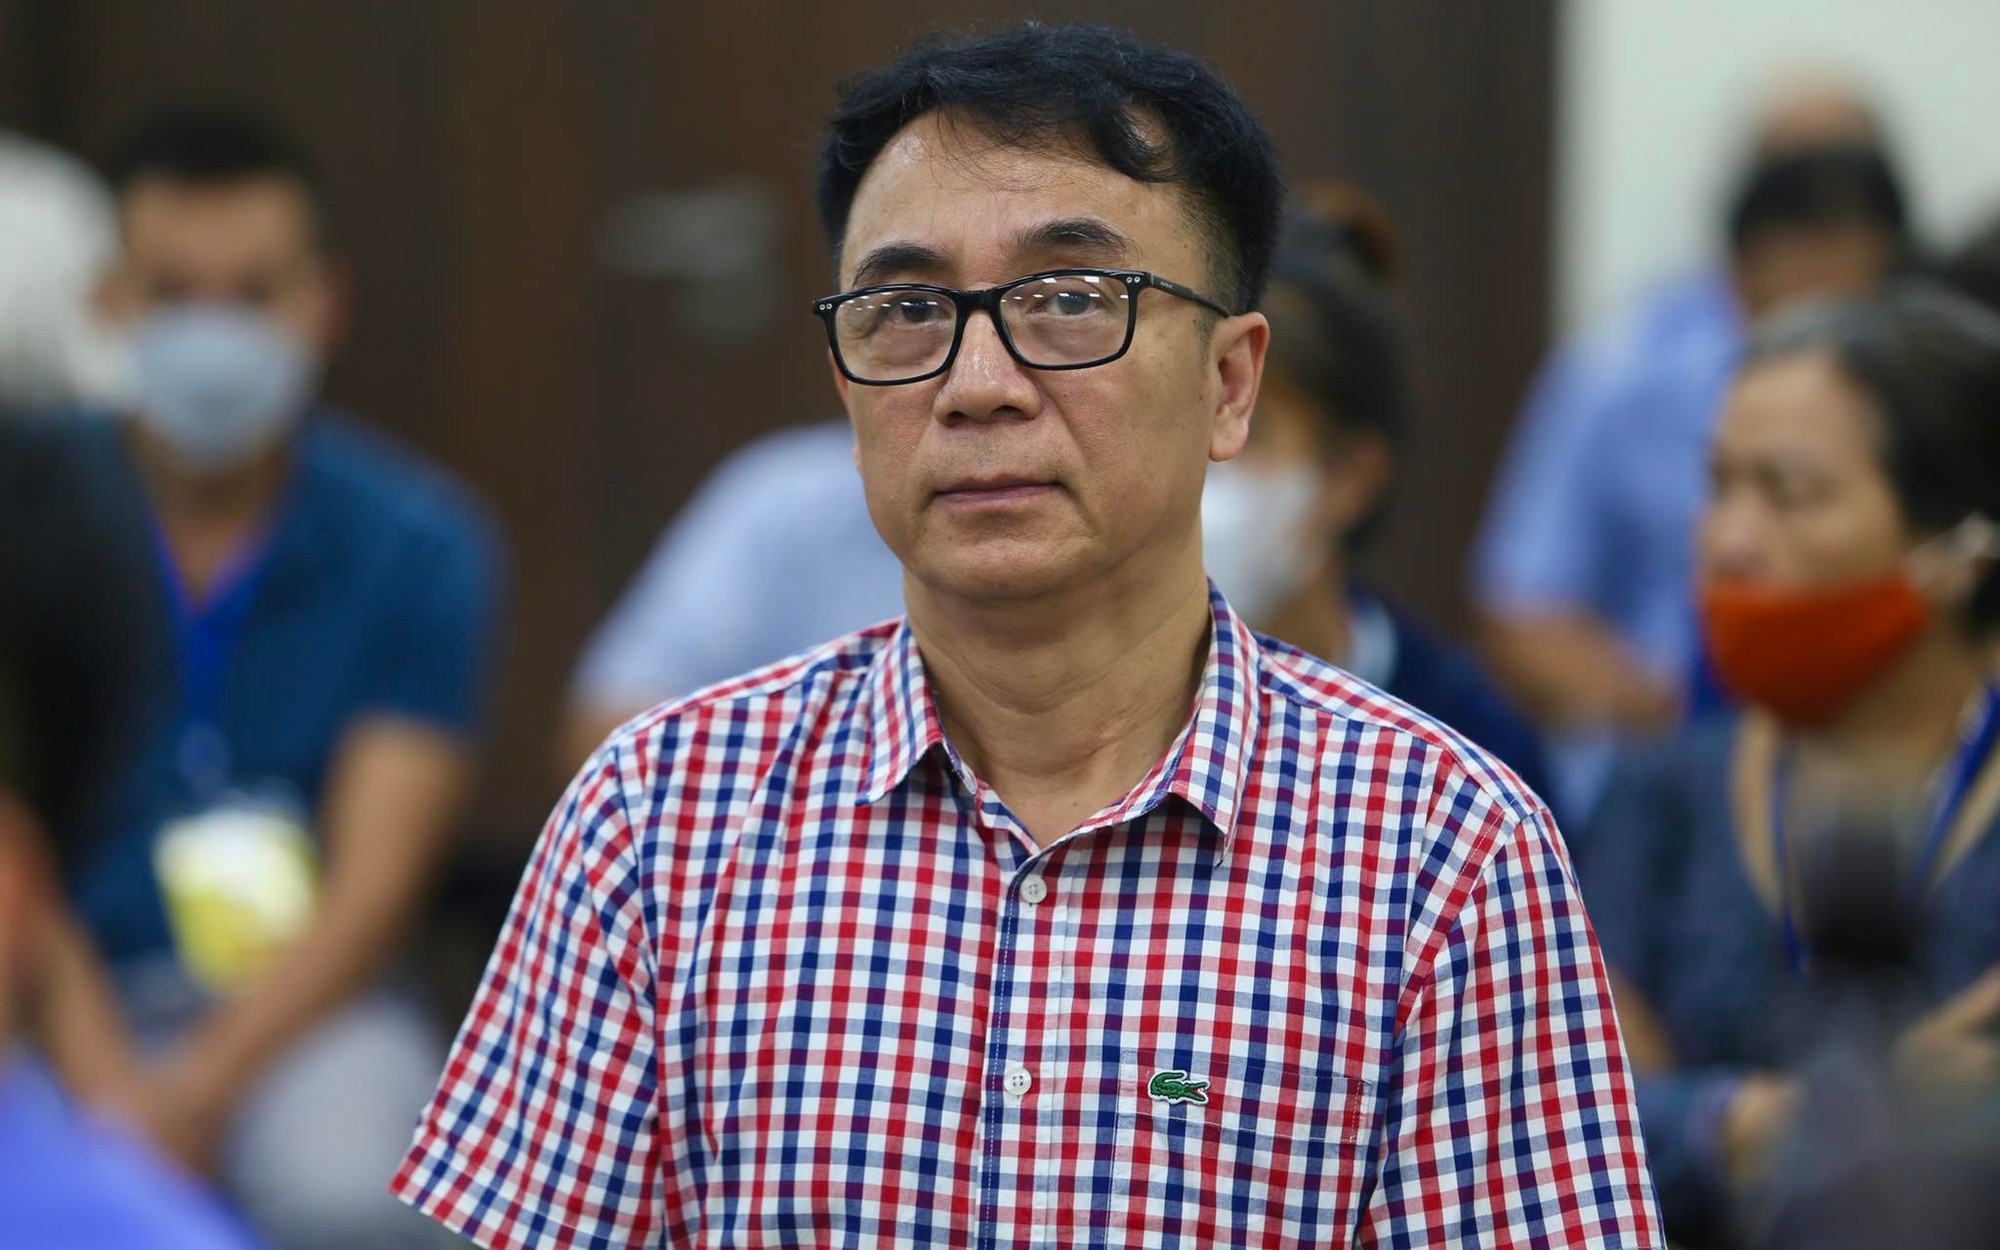 Đối chất “nảy lửa” xoay quanh cáo buộc cựu Cục phó Quản lý thị trường Trần Hùng nhận hối lộ 300 triệu đồng